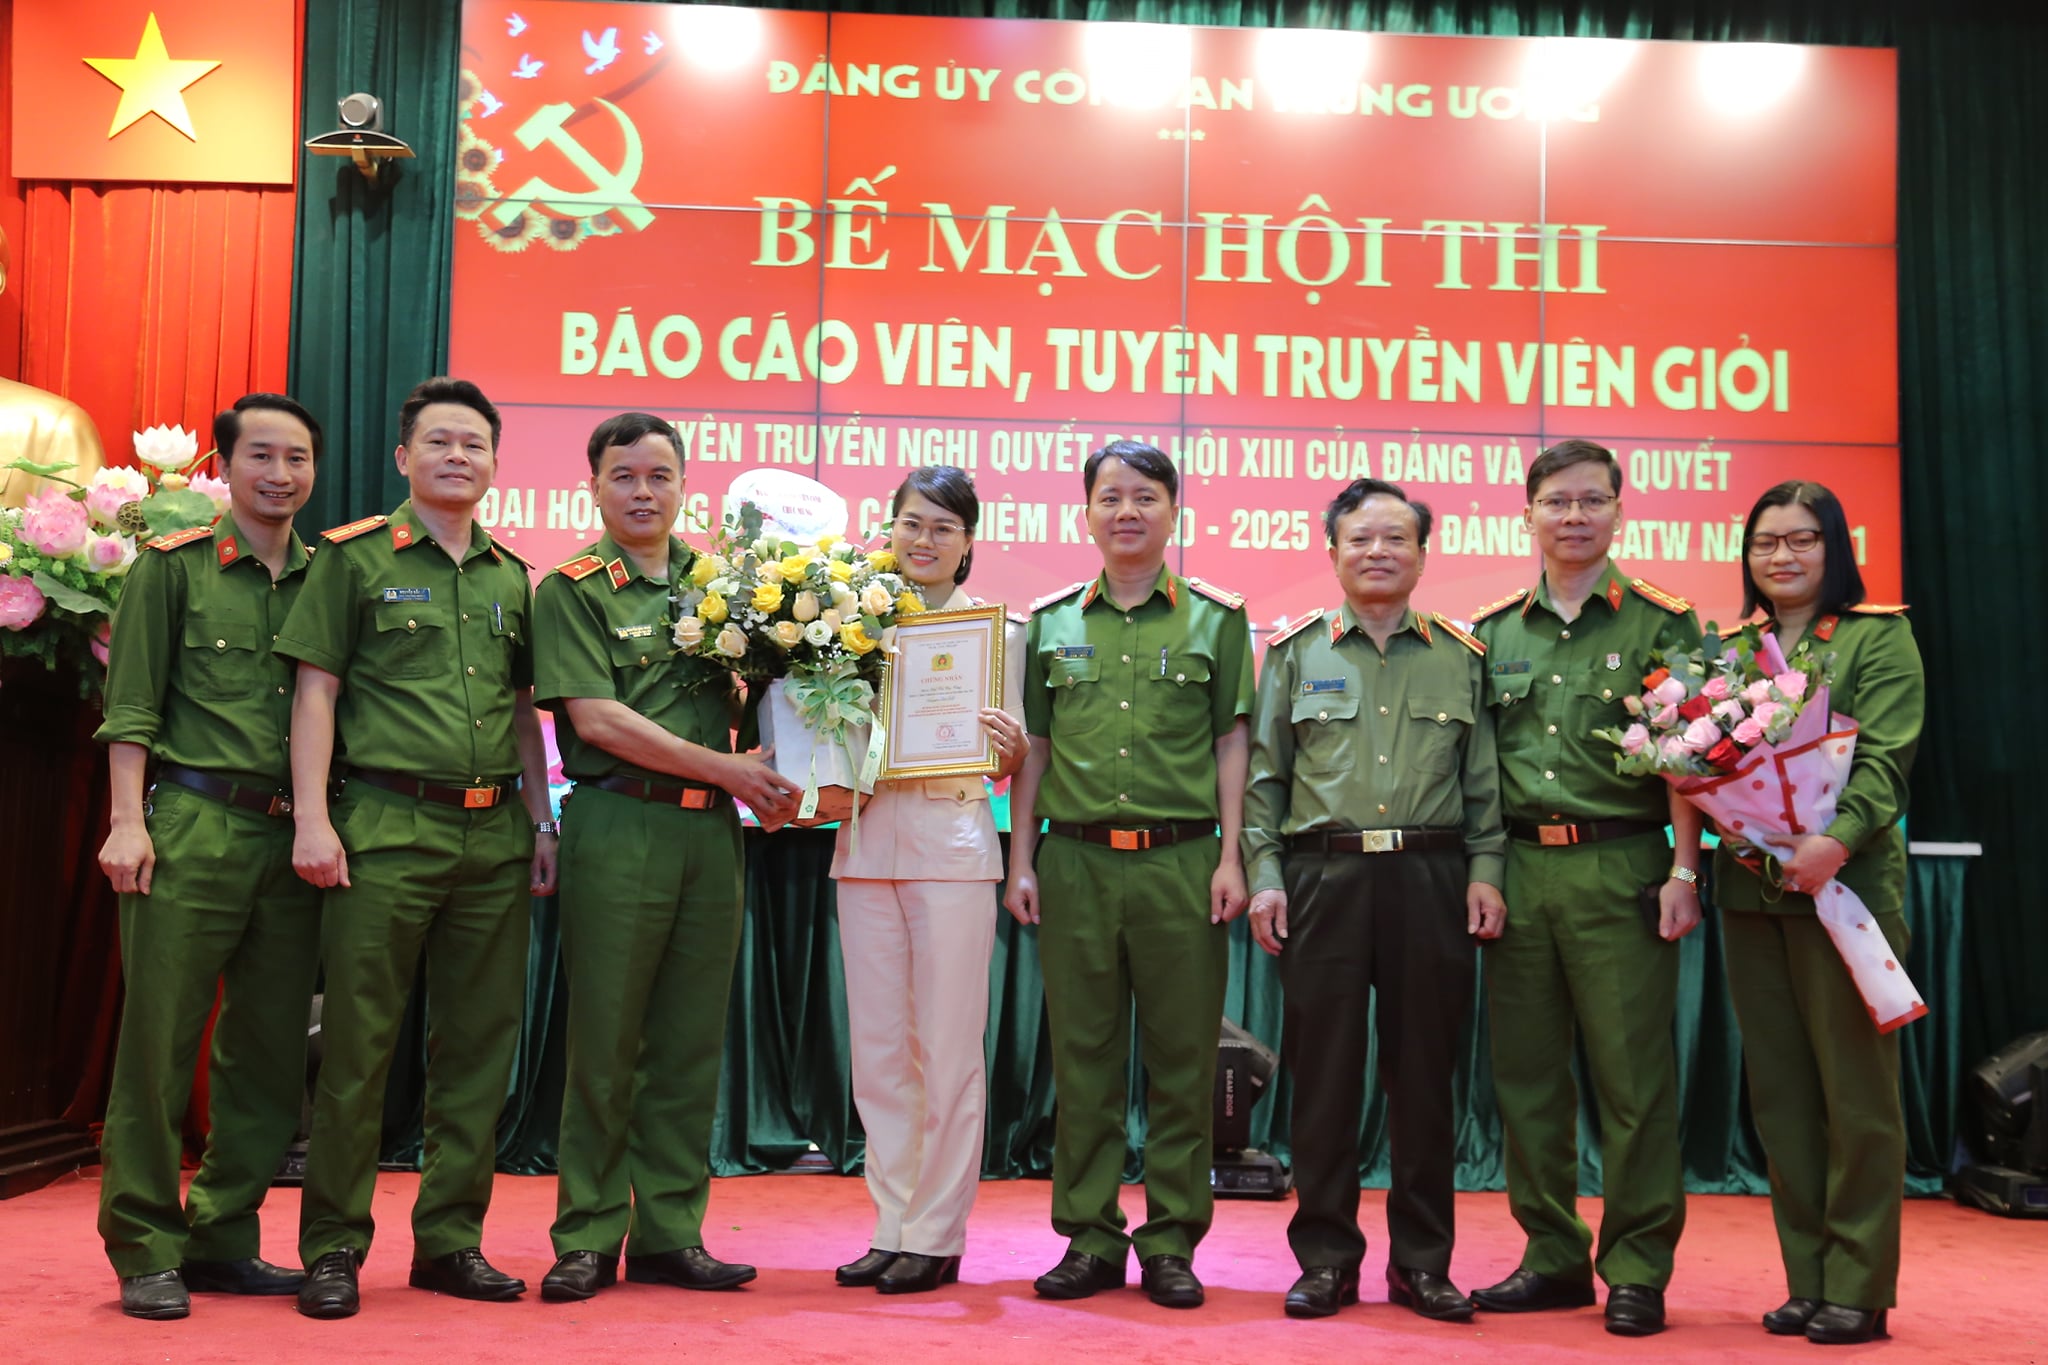 Thiếu tướng Nguyễn Đắc Hoan - Phó Giám đốc Học viện chúc mừng thành tích của đồng chí Bùi Thị Thu Thuỷ